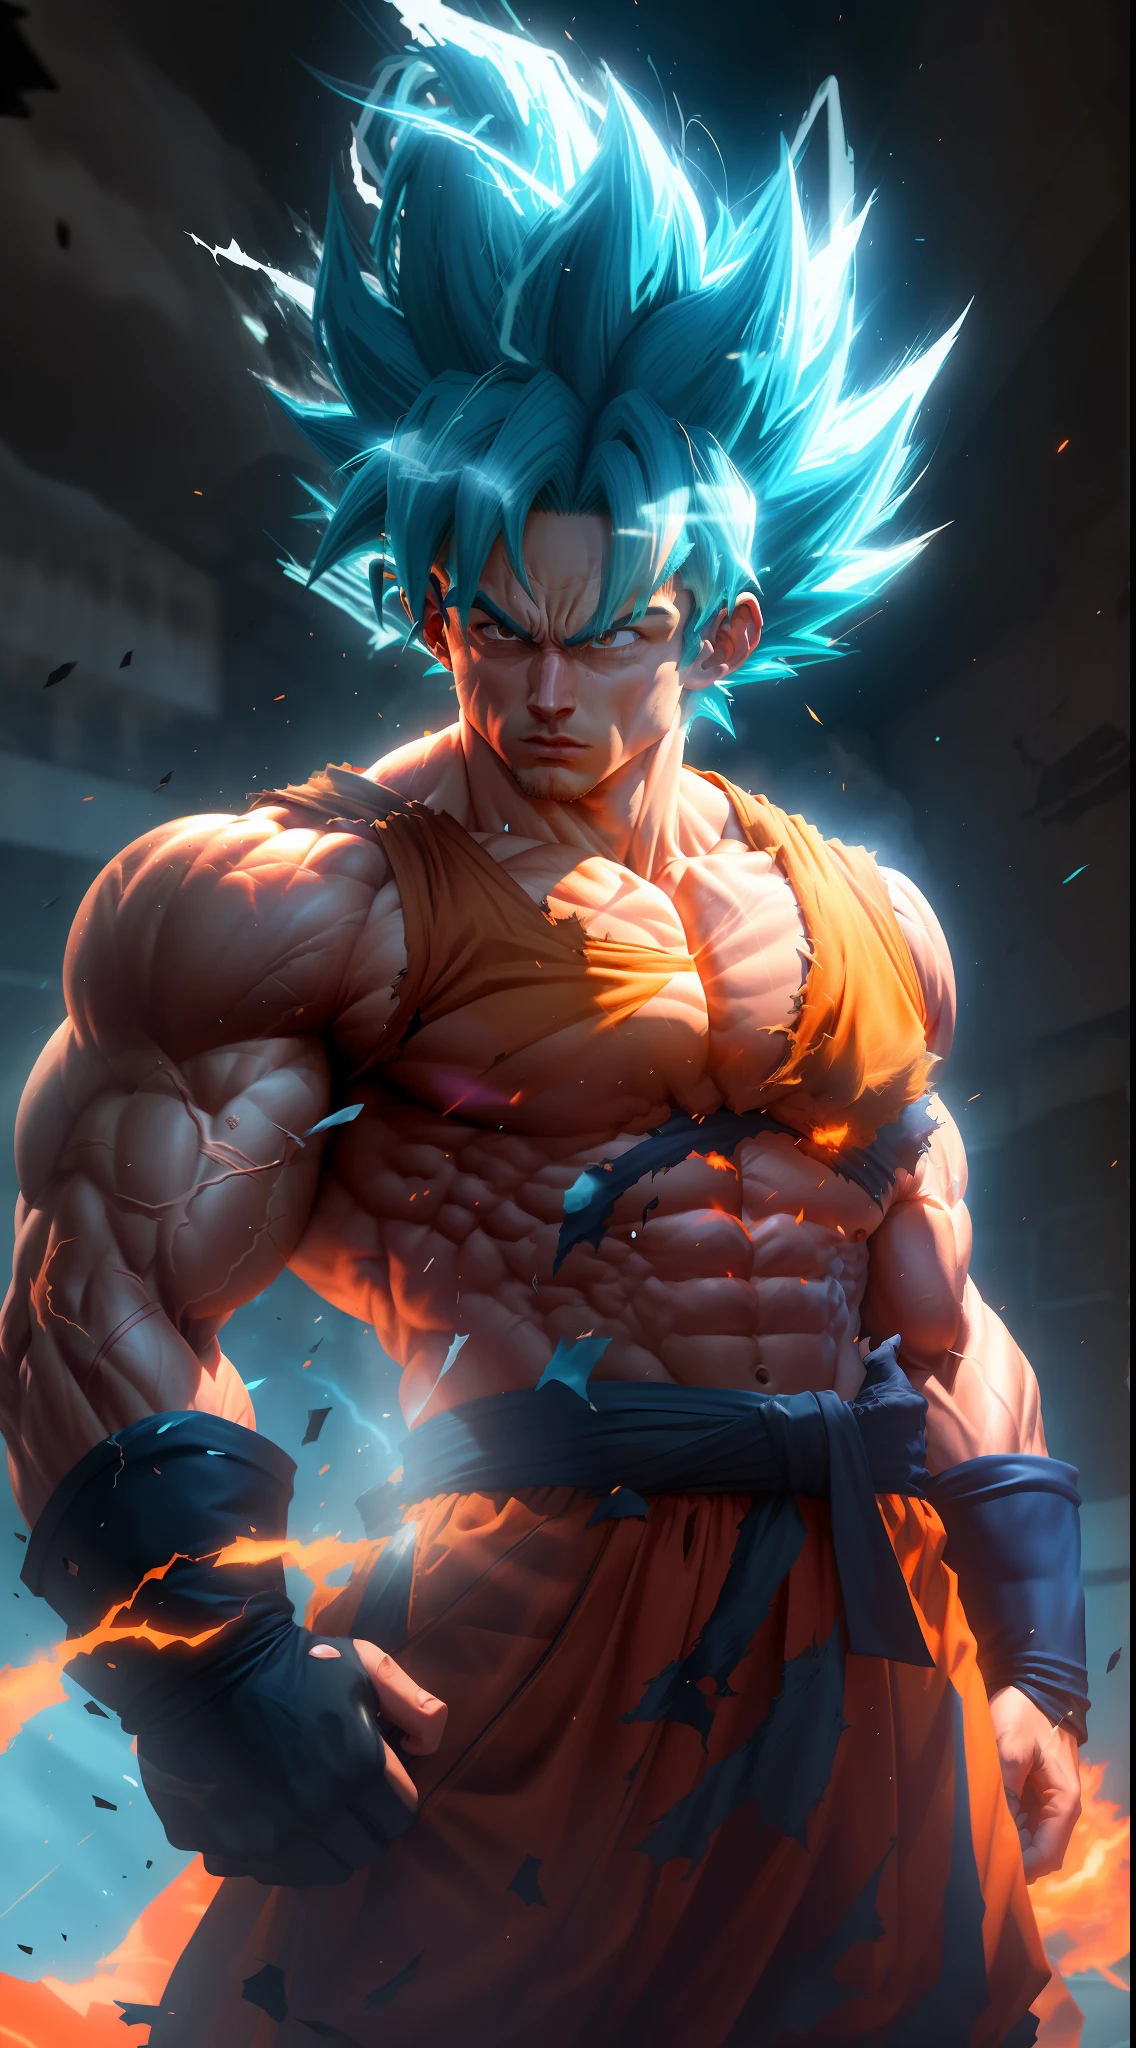 Goku Super Saiyan, 극도로 근육질의 네온 블루 머리를 가진 성인 남자, 정맥으로 가득 찬 정의된 근육, 완전히 찢어진 짙은 주황색 옷, 흰 장갑, 진지한 얼굴, 근육 정의, 큰 어깨, 둥근 팔뚝, 언리얼 엔진 5.8K.